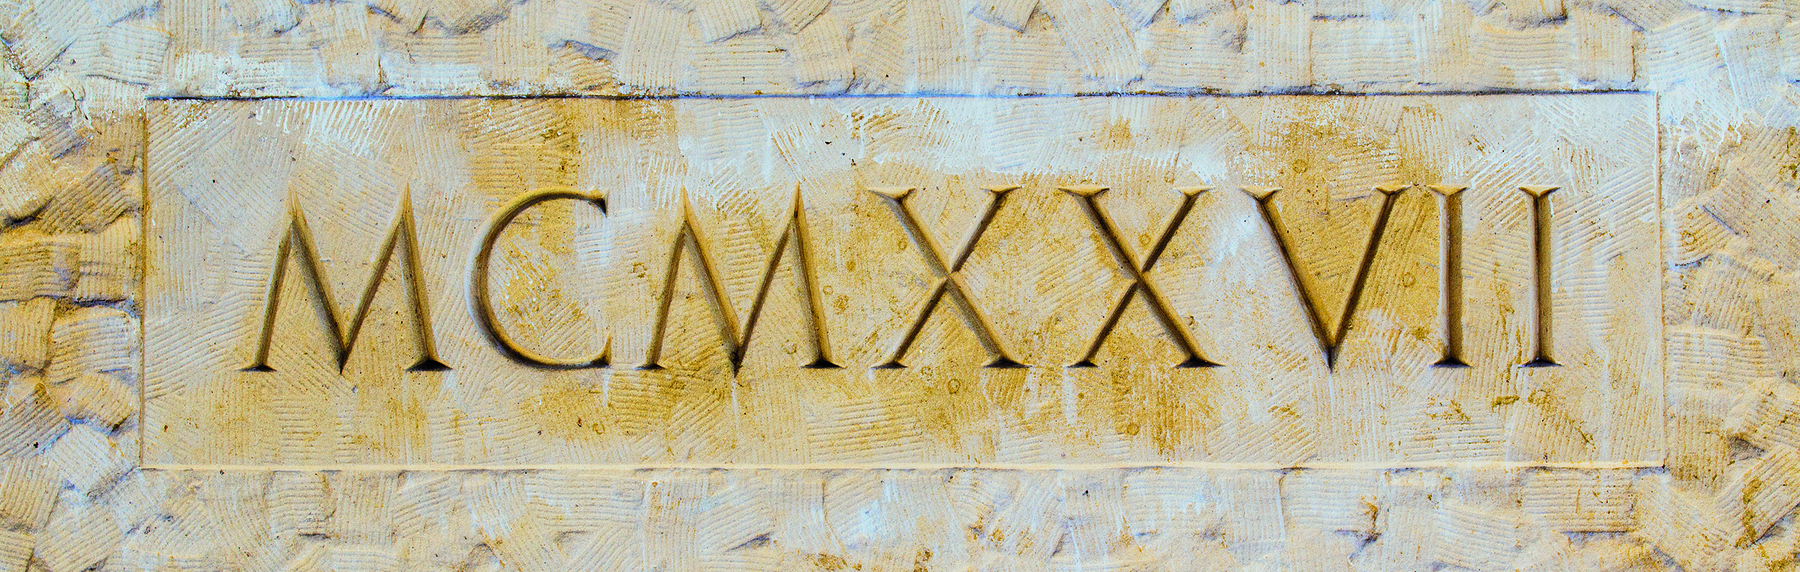 Fotografia. Letras MAIÚSCULAS  M C M X X V I I esculpidas em uma parede.